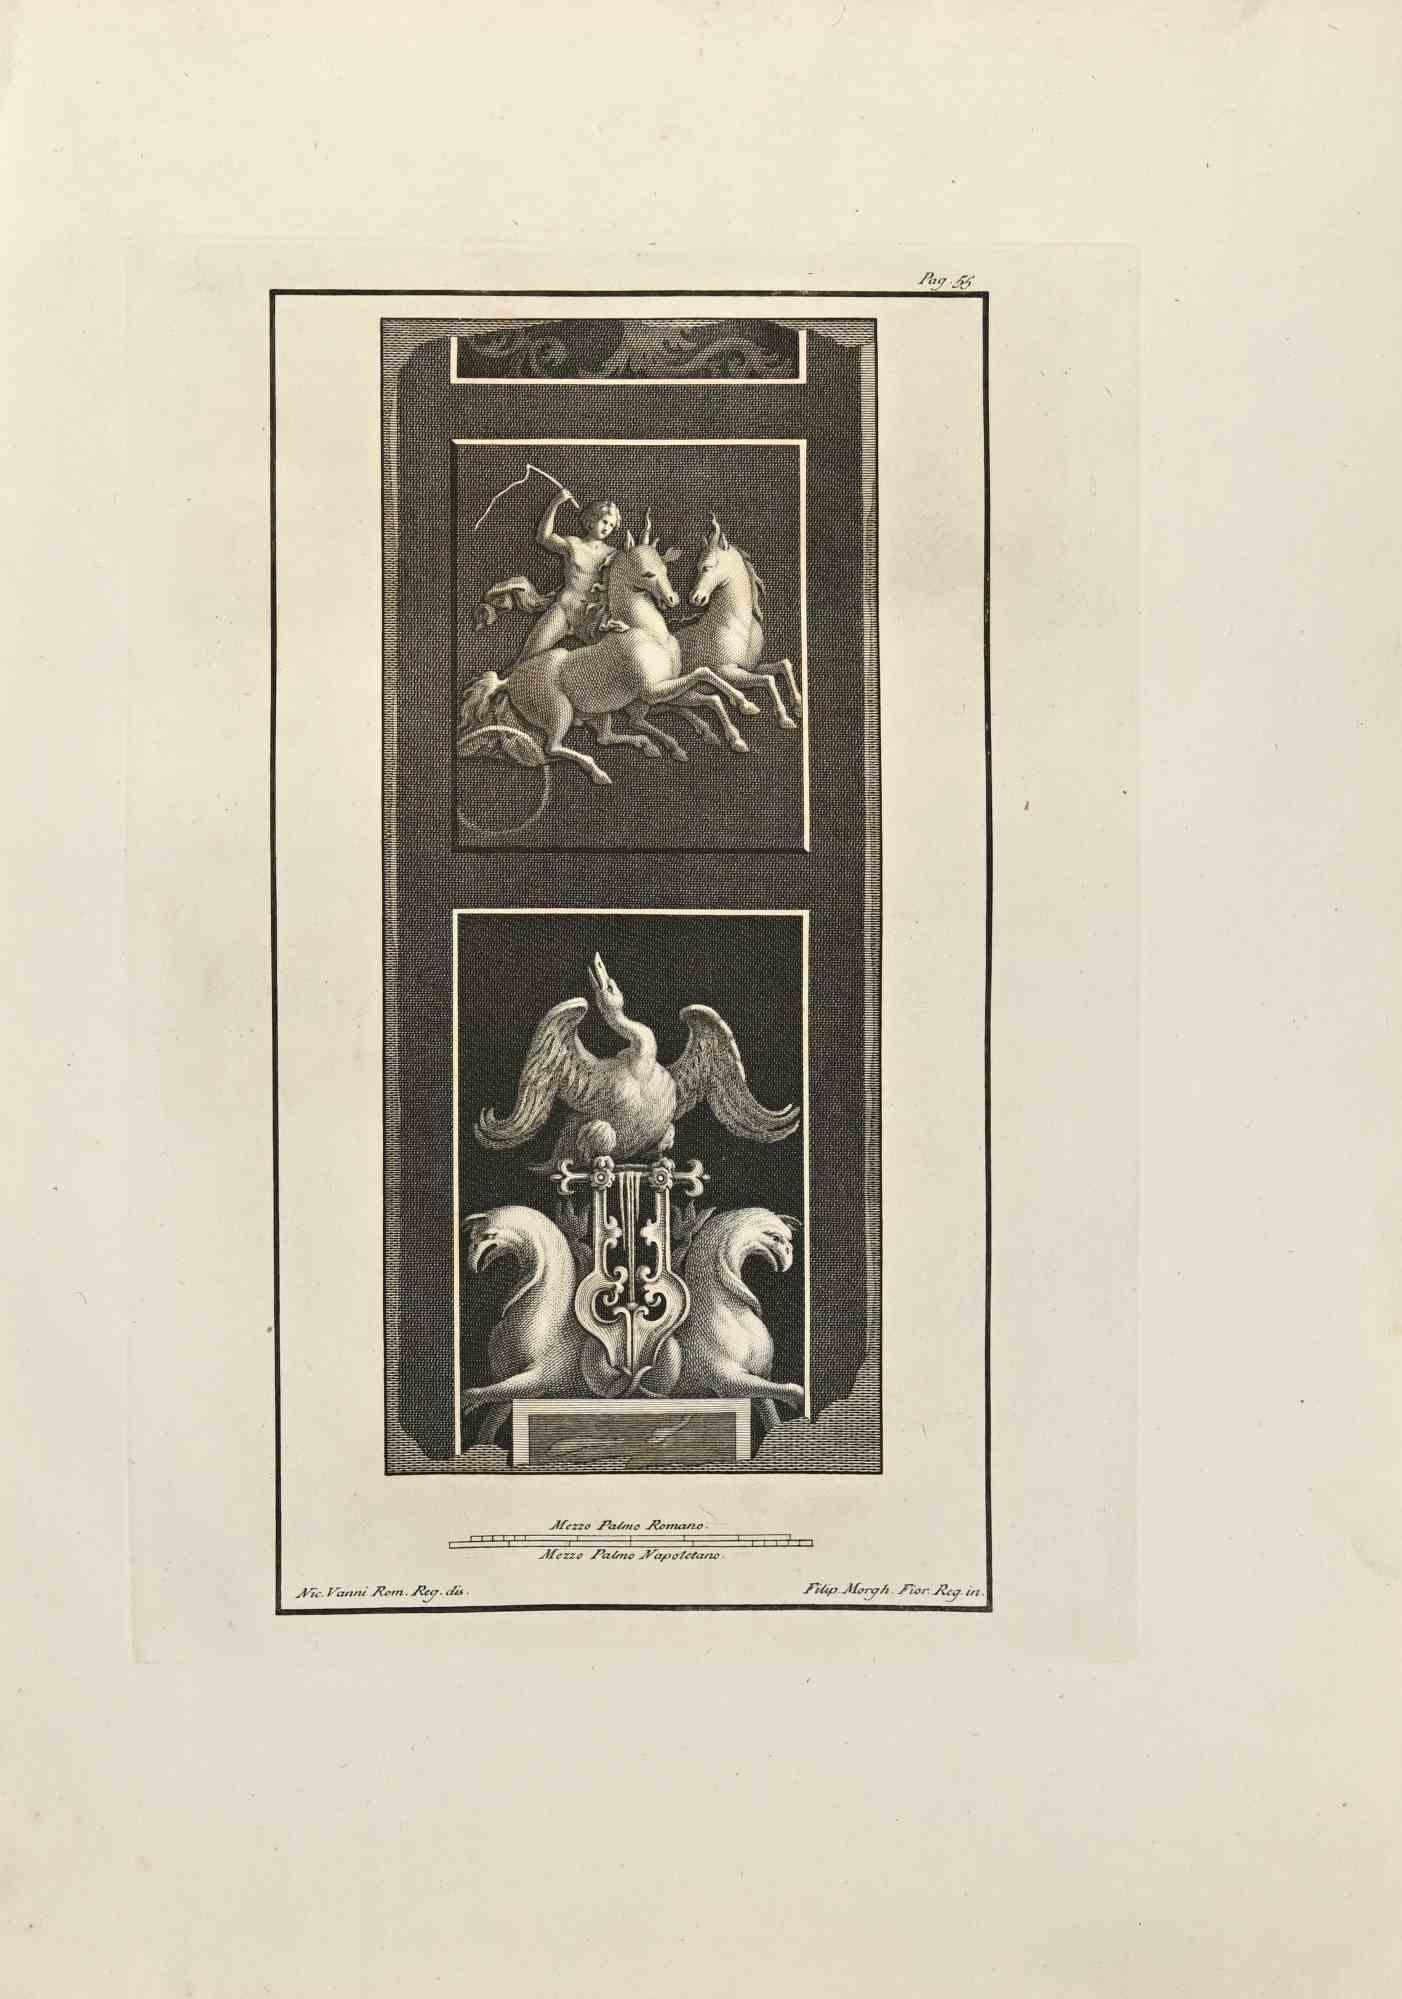 Hermes und Hippogreif aus den "Altertümern von Herculaneum"  ist eine Radierung auf Papier von Filippo Morghen aus dem 18. Jahrhundert.

Signiert auf der Platte.

Guter Zustand mit einigen Stockflecken und Falten aufgrund der Zeit.

Die Radierung